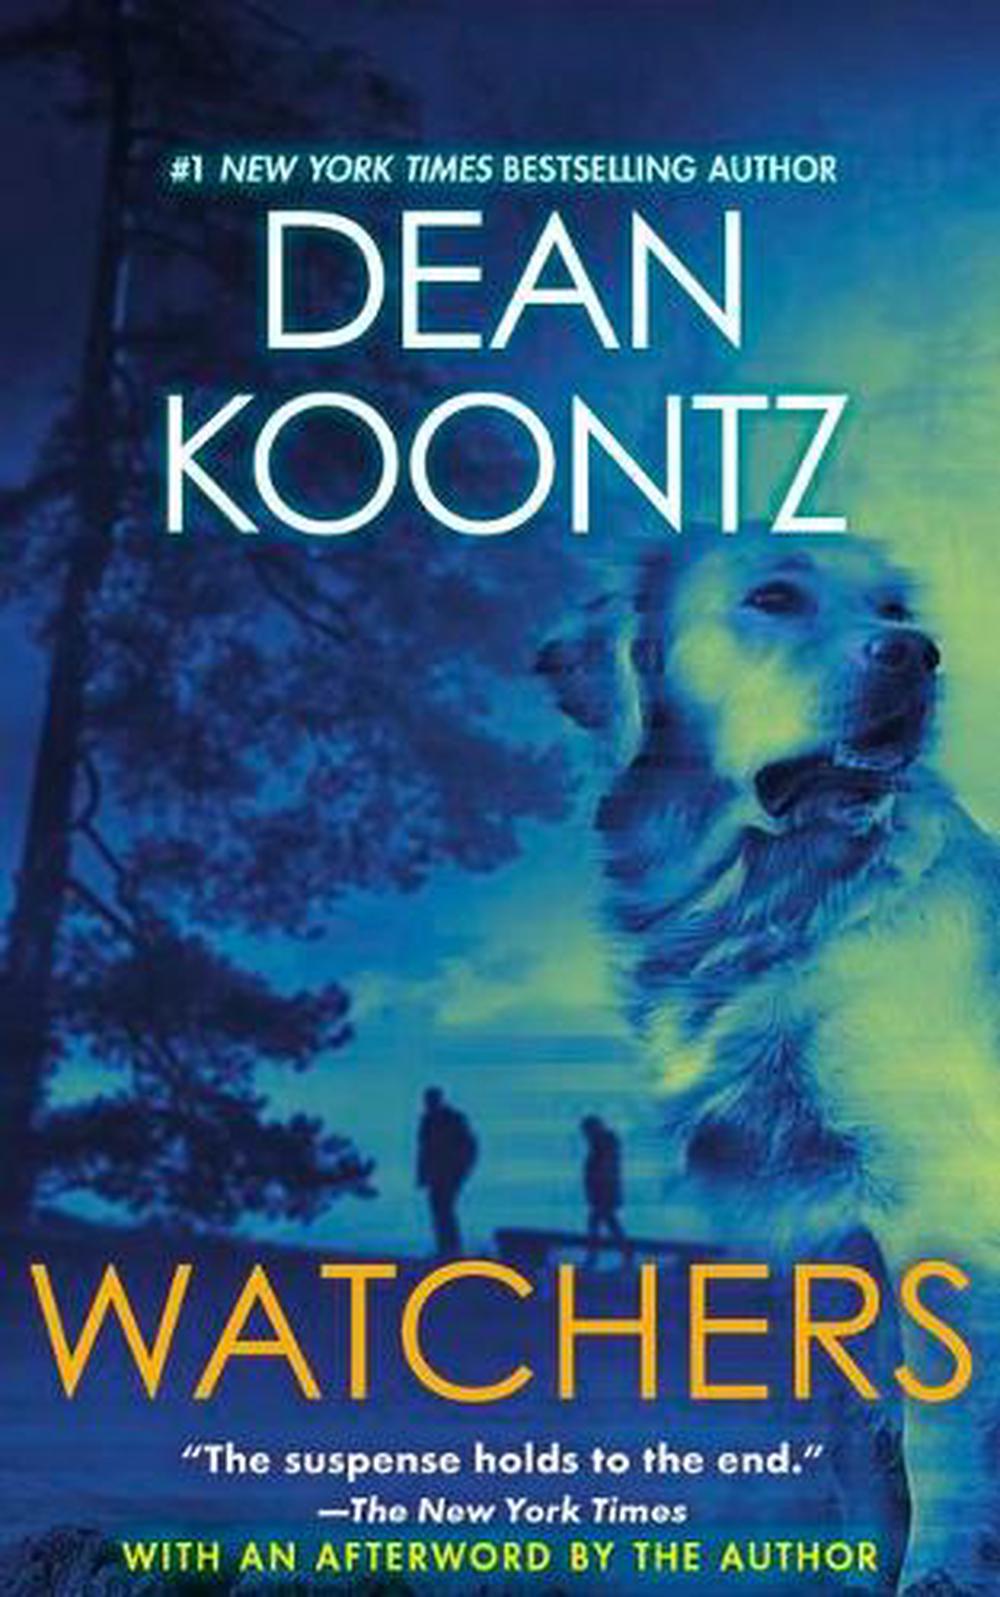 dean koontz book with einstein the dog